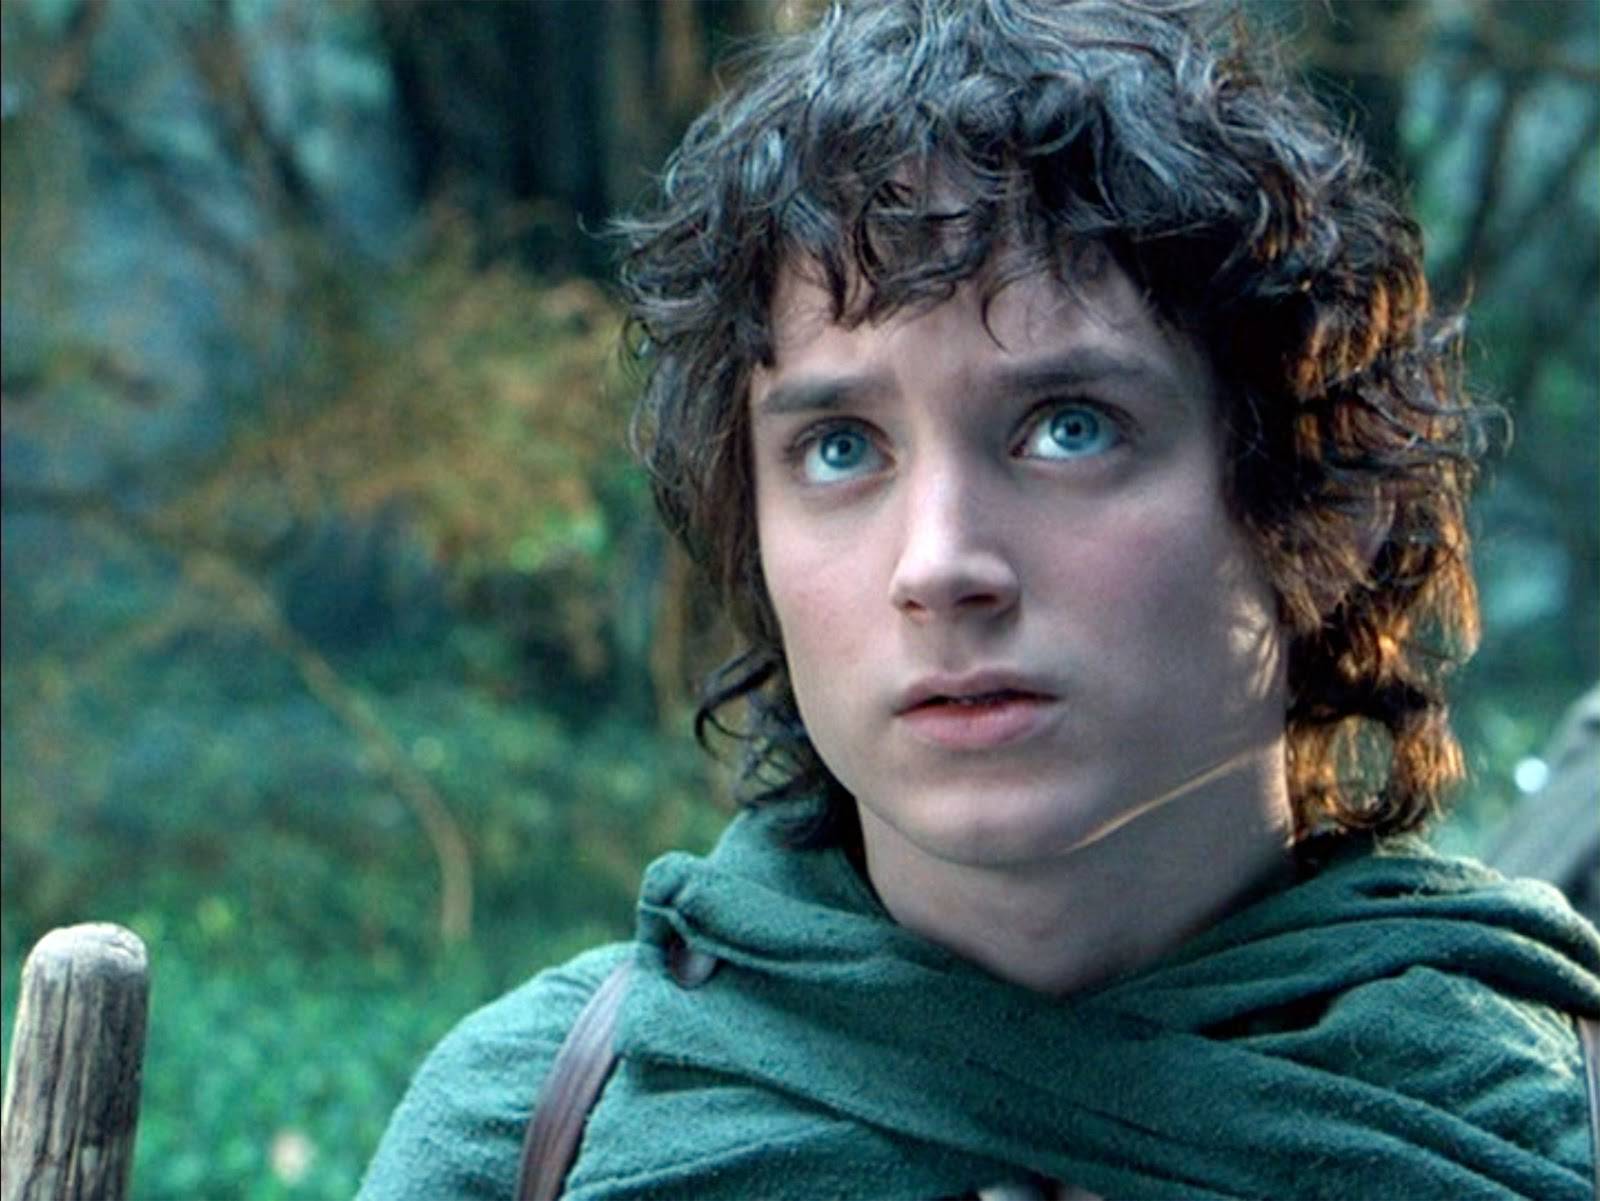 Frodo iz Gospodara prstenova trebao je biti model, a onda je postao svjetski poznat glumac